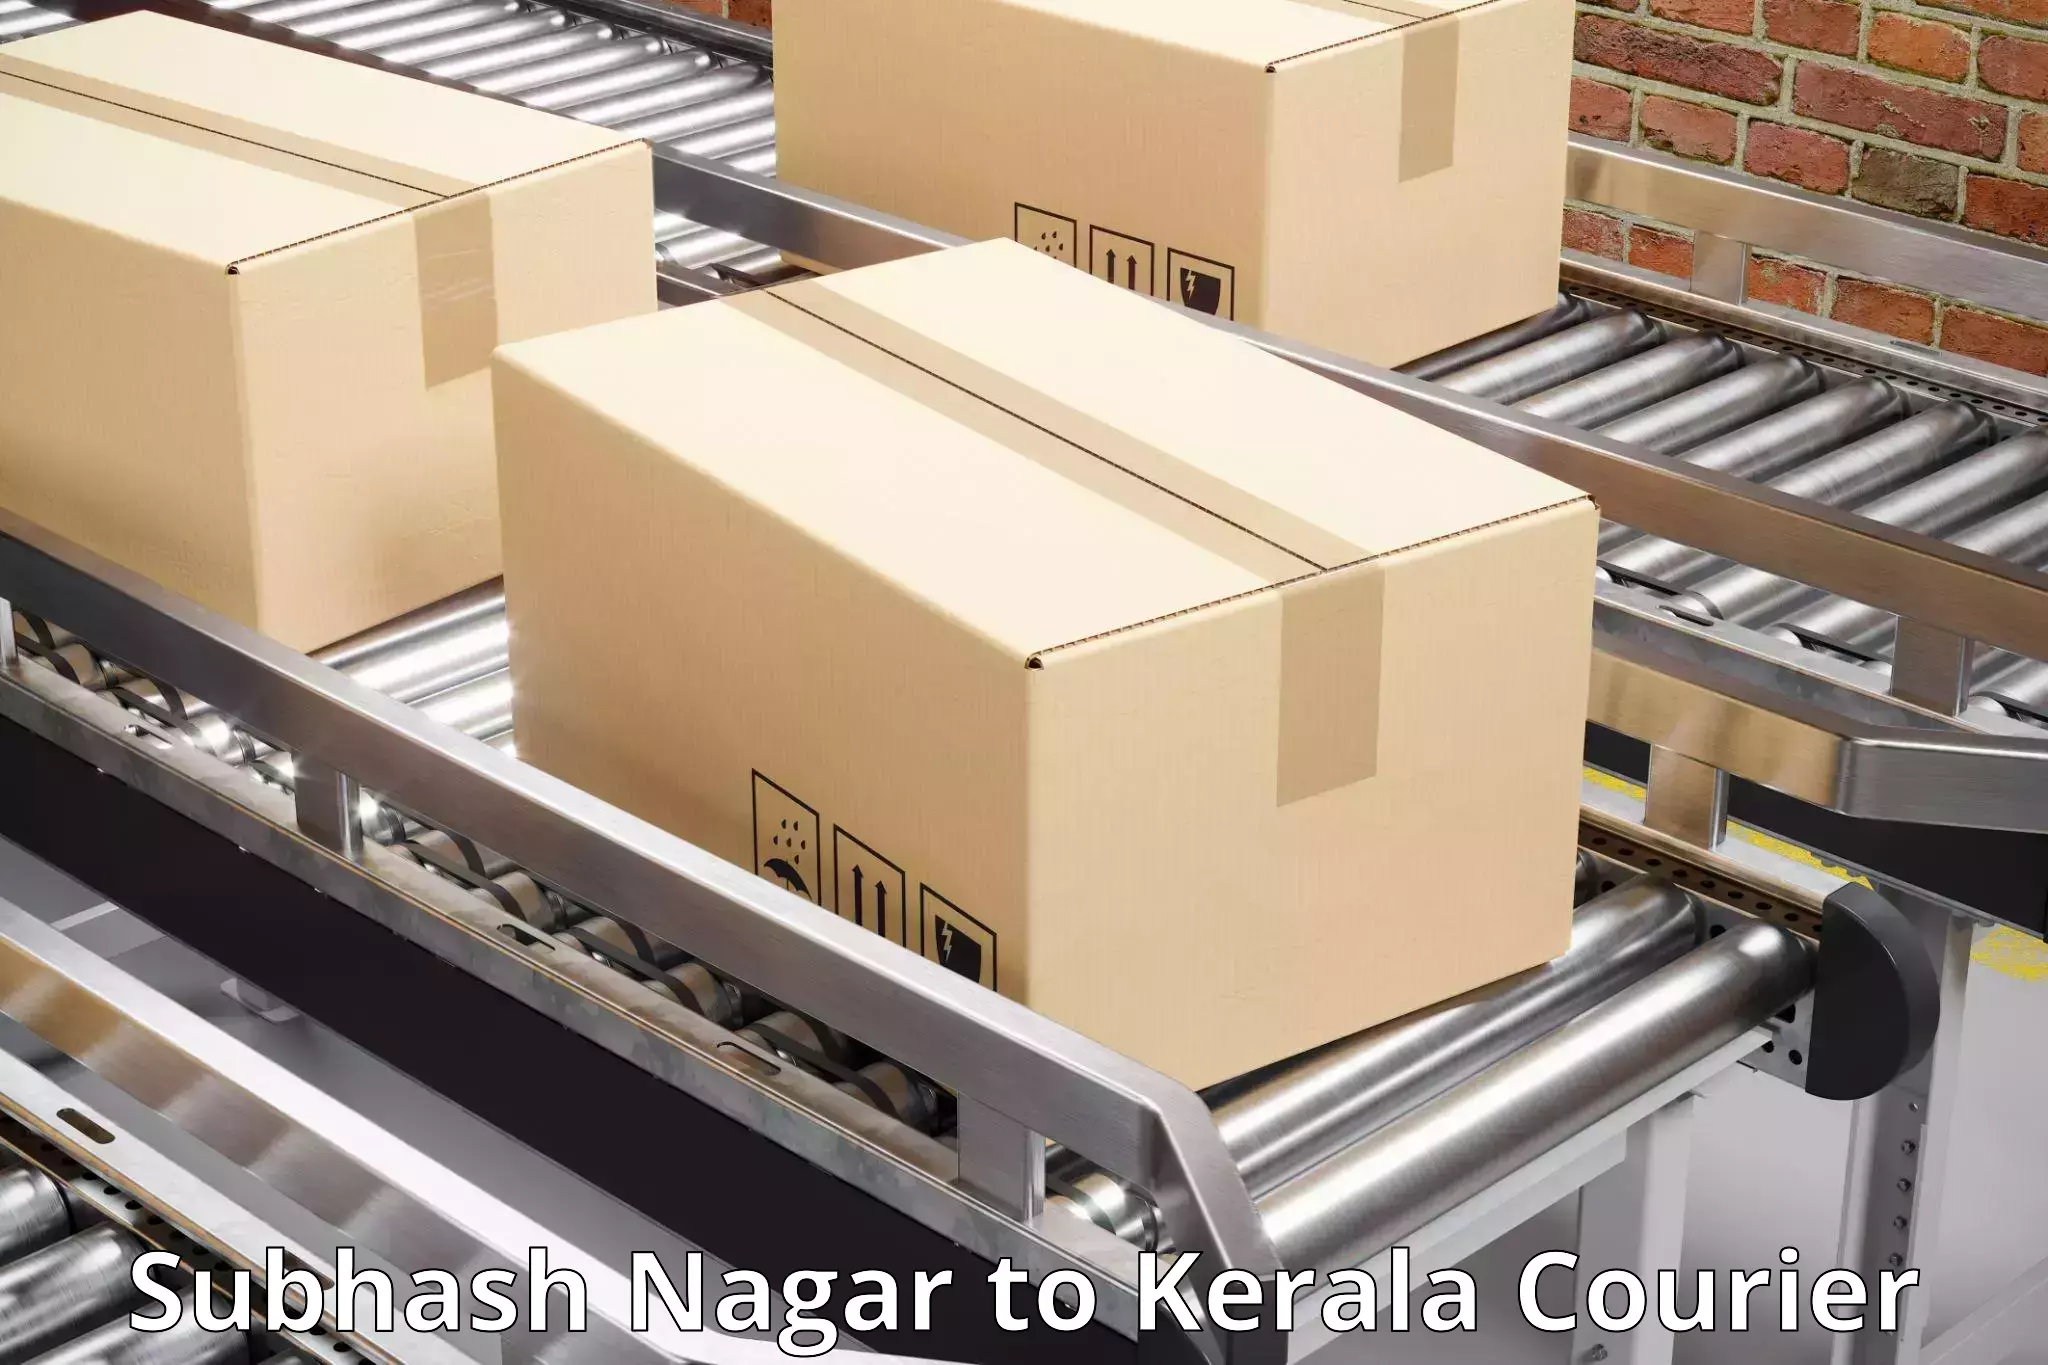 24-hour courier service Subhash Nagar to Pazhayannur